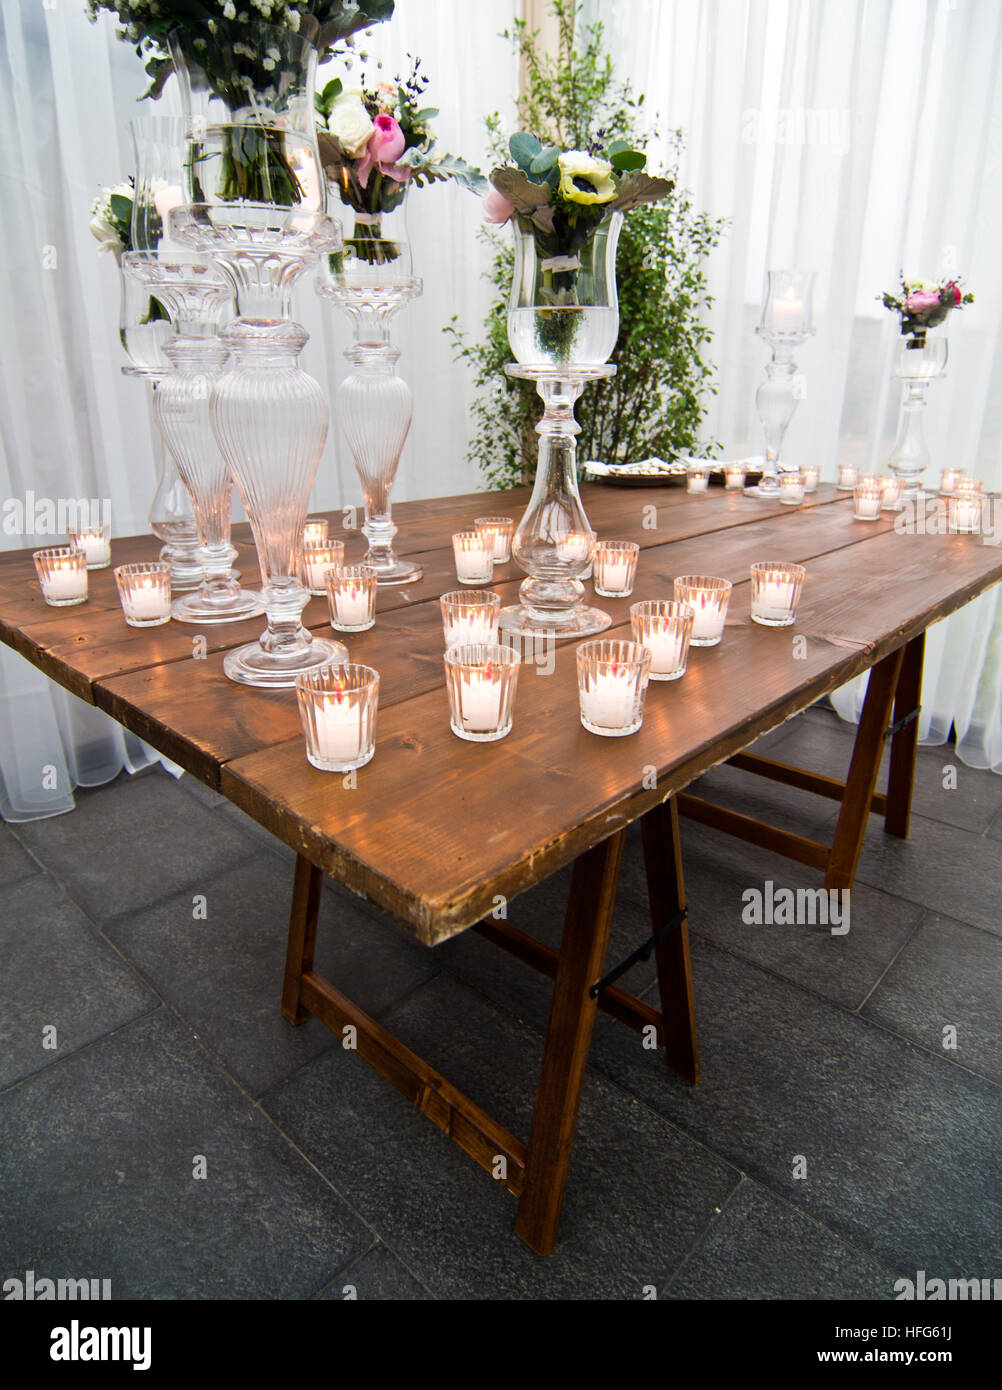 Candele accese su una tavola di legno creano un'atmosfera accogliente, di affetto e di amore Foto Stock